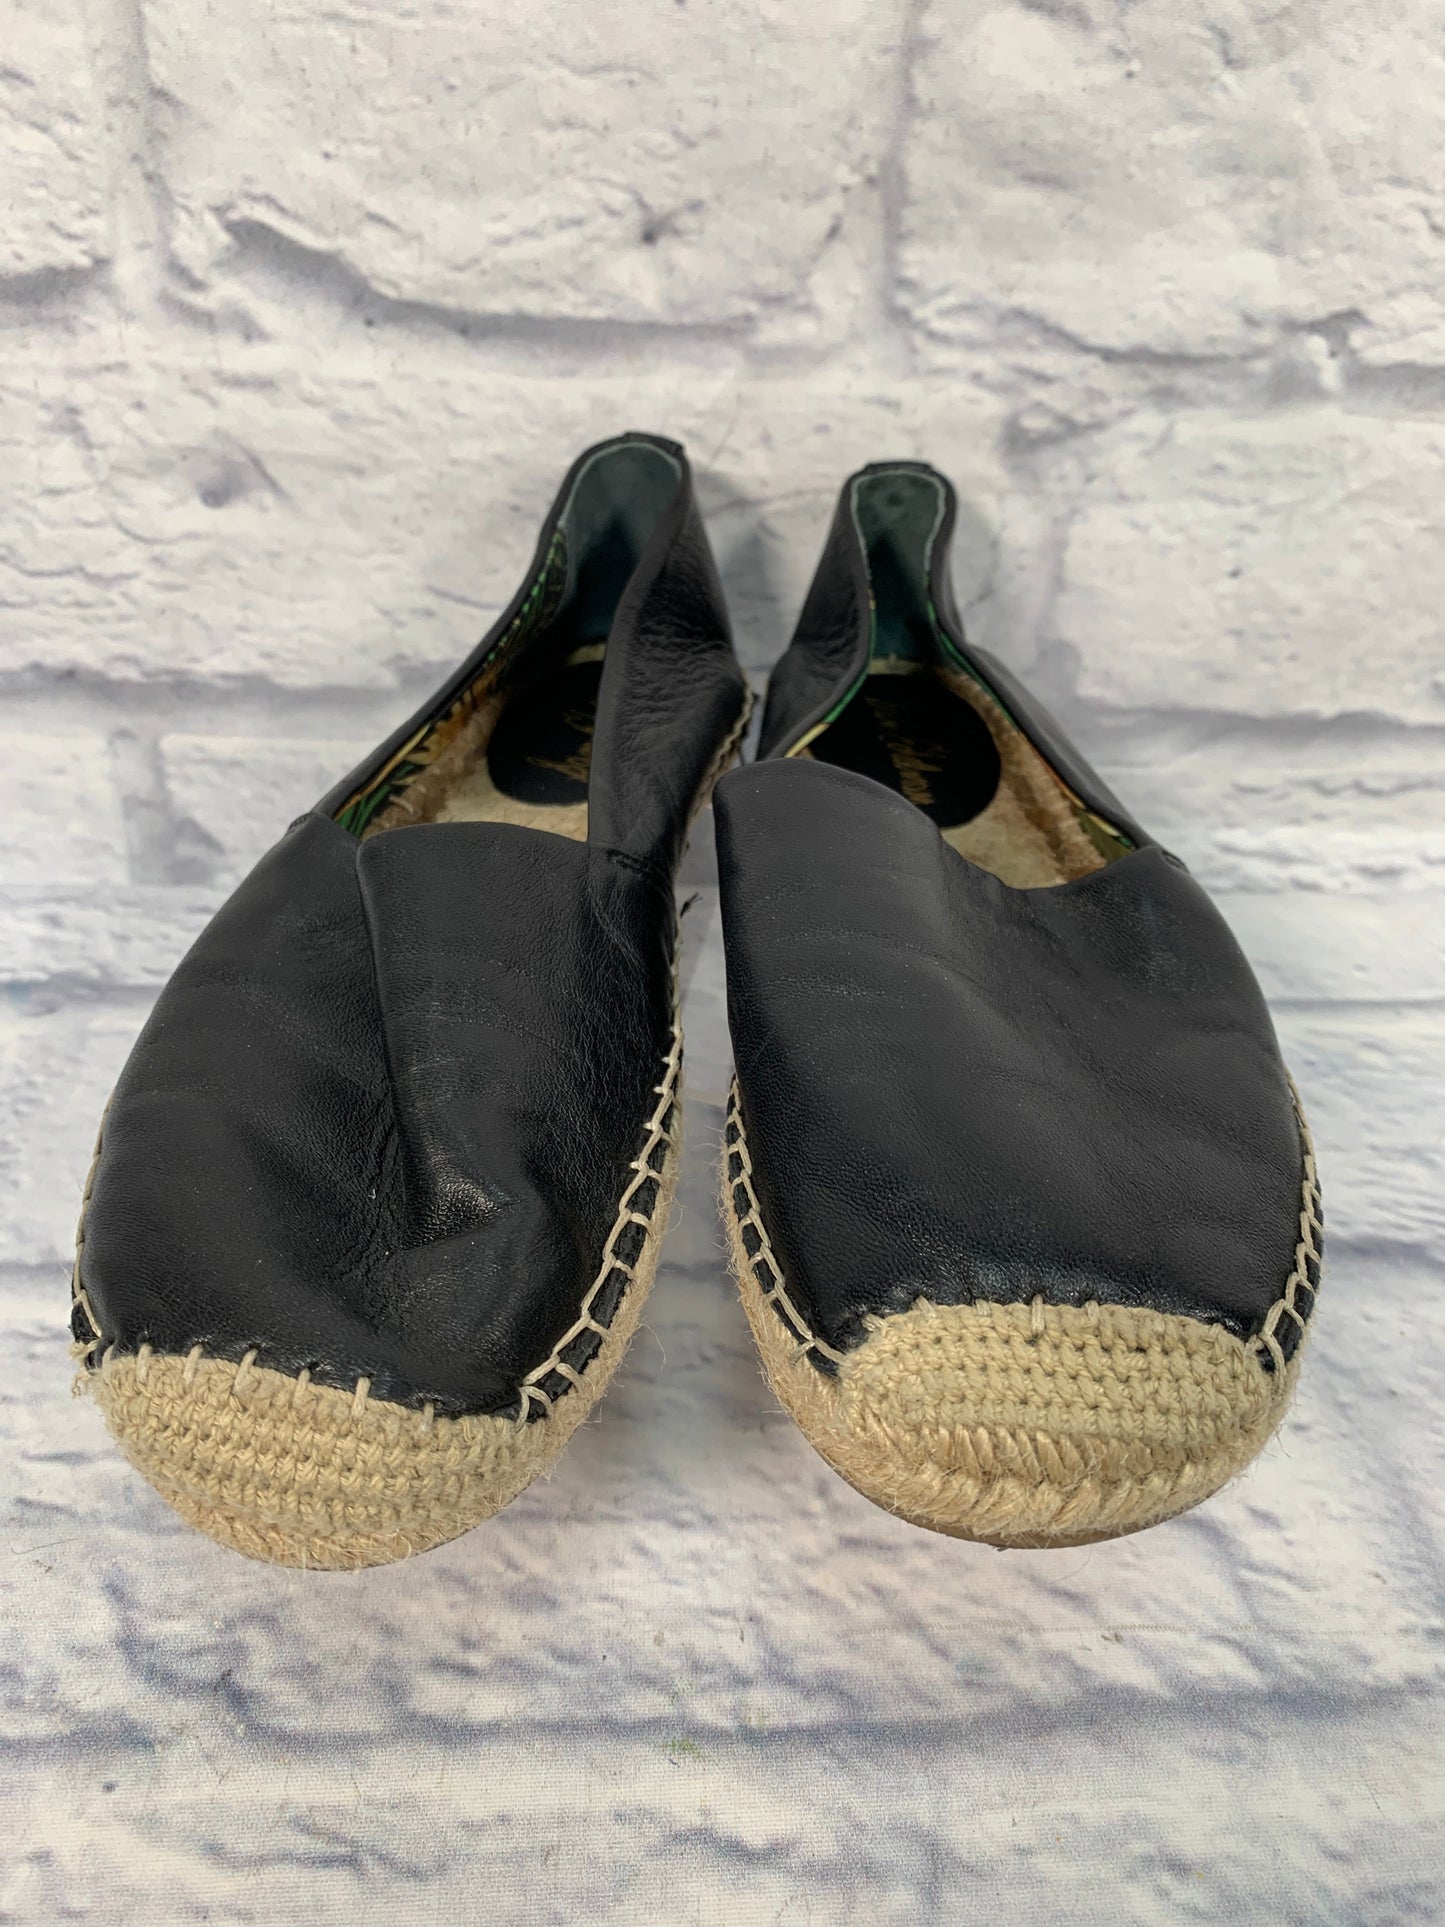 Black & Tan Shoes Flats Sam Edelman, Size 8.5